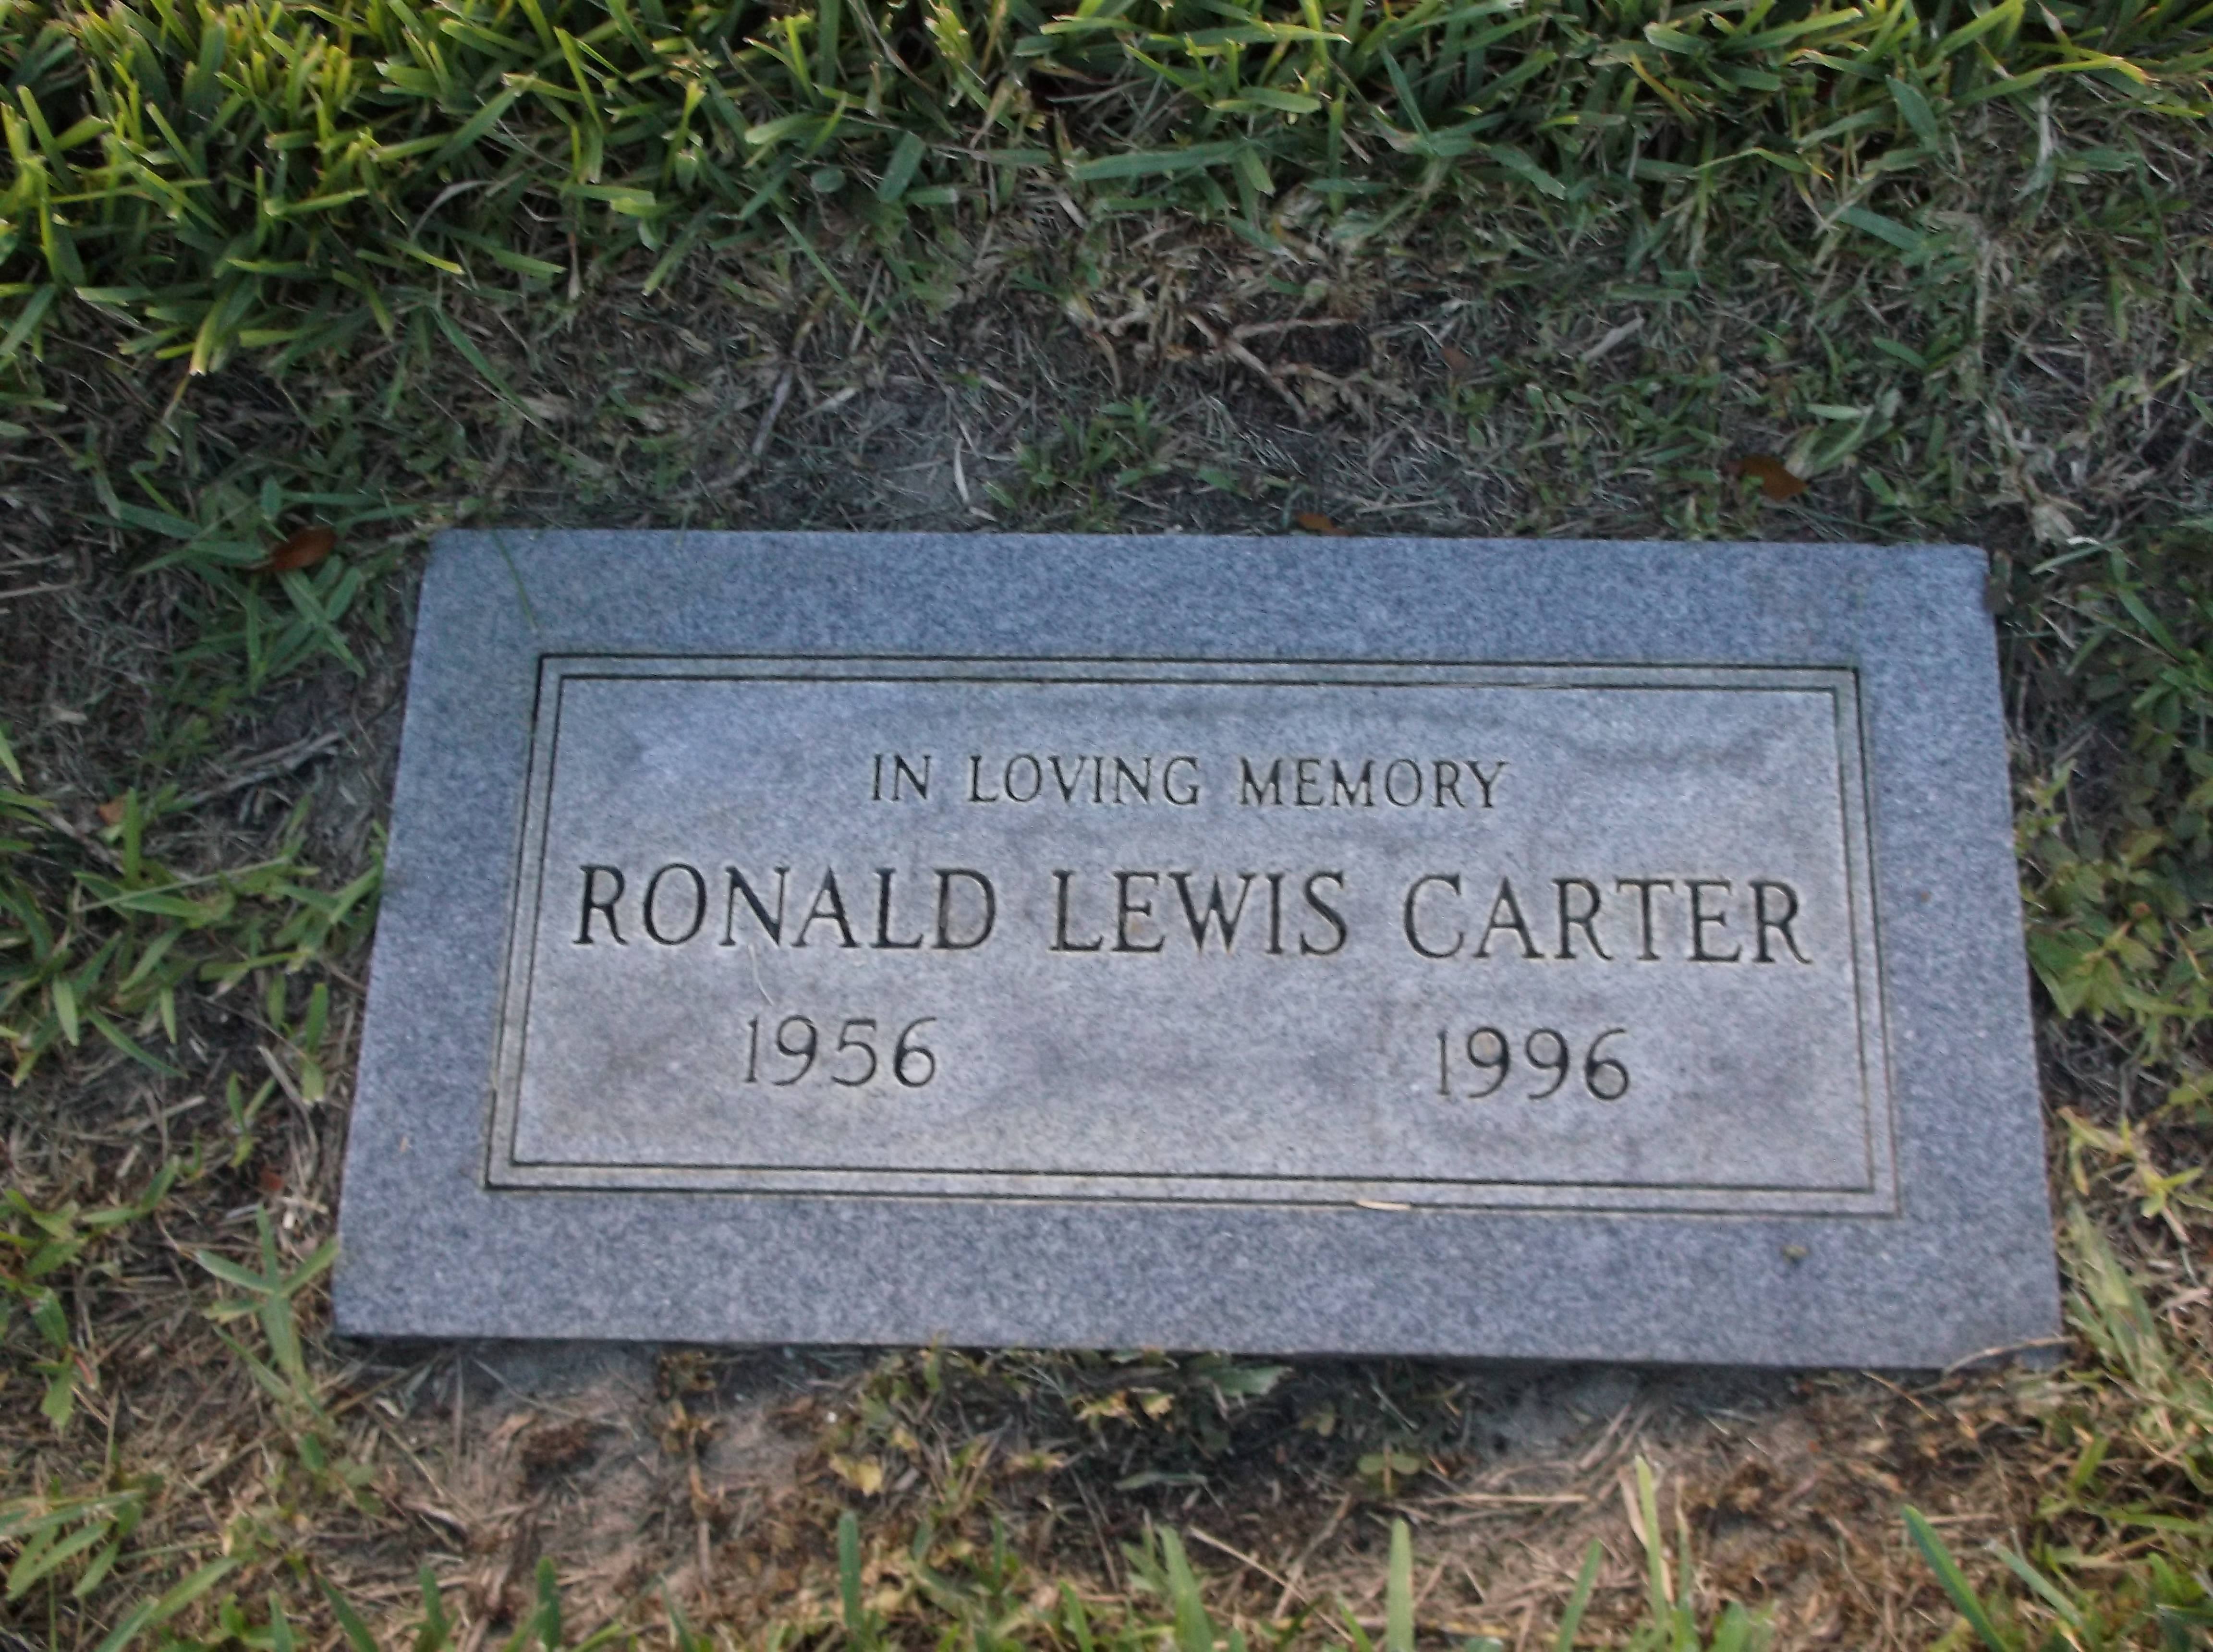 Ronald Lewis Carter